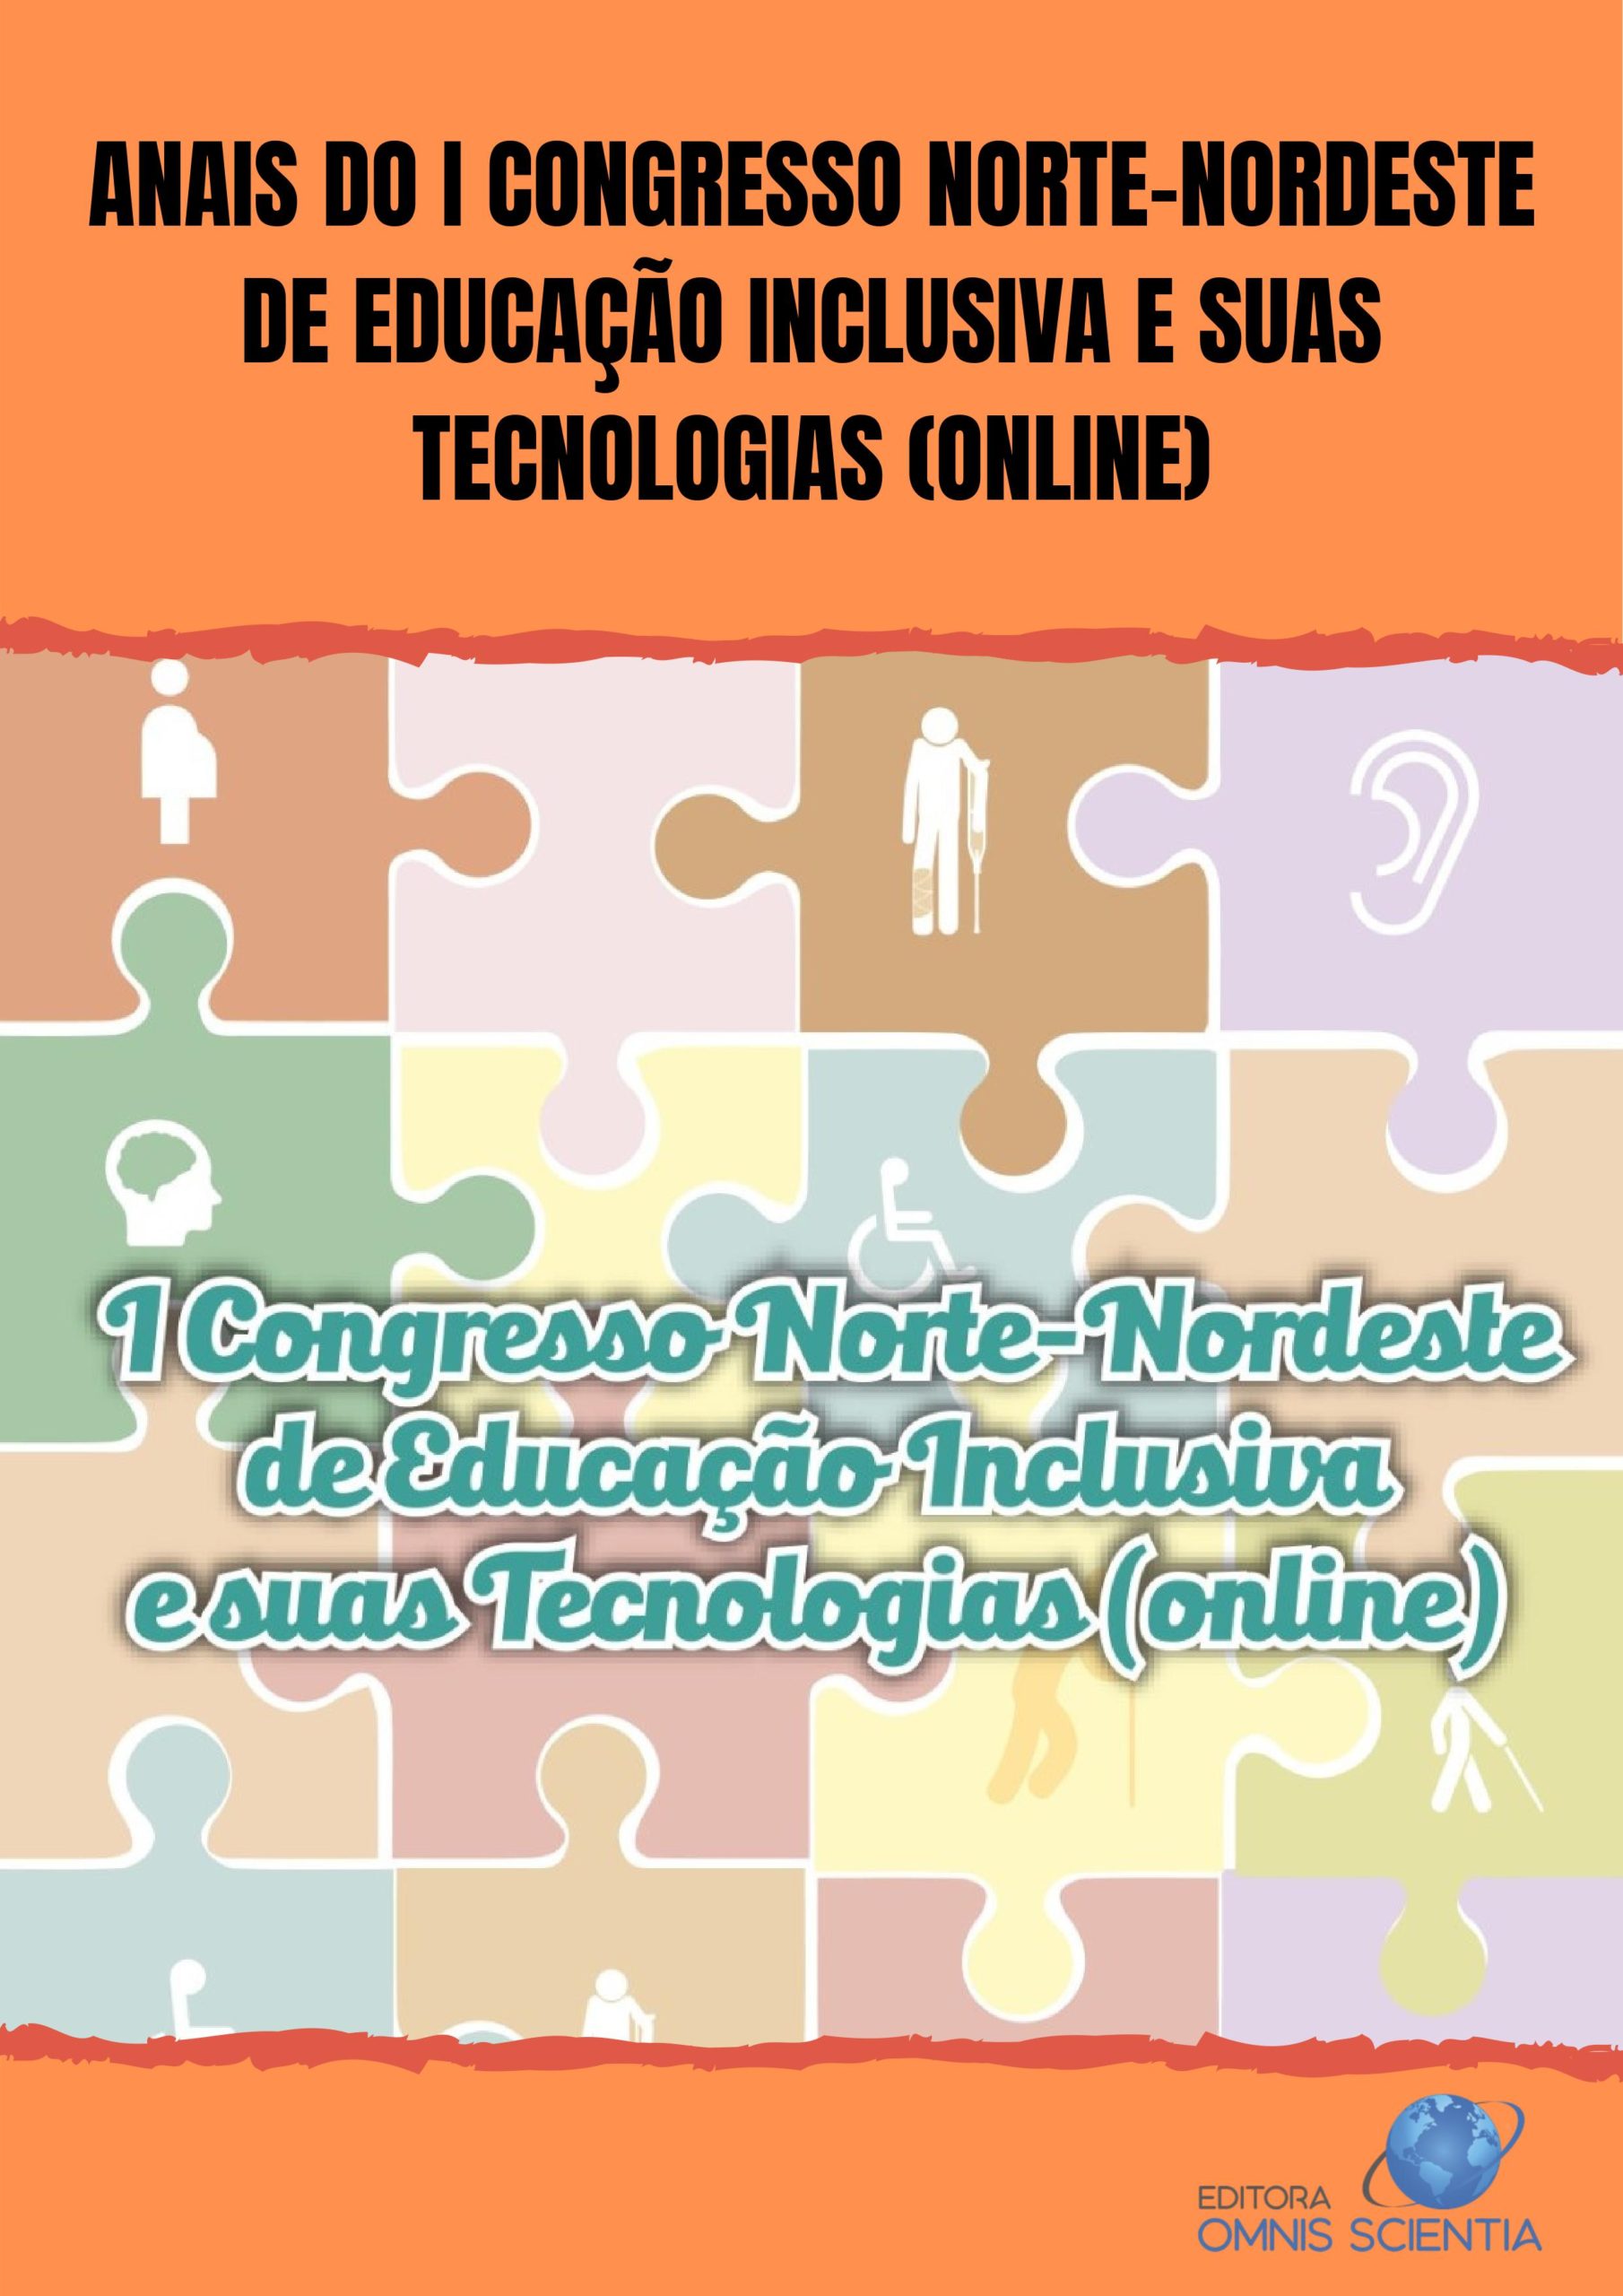 ANAIS DO I CONGRESSO NORTE-NORDESTE DE EDUCAÇÃO INCLUSIVA E SUAS TECNOLOGIAS (ONLINE)